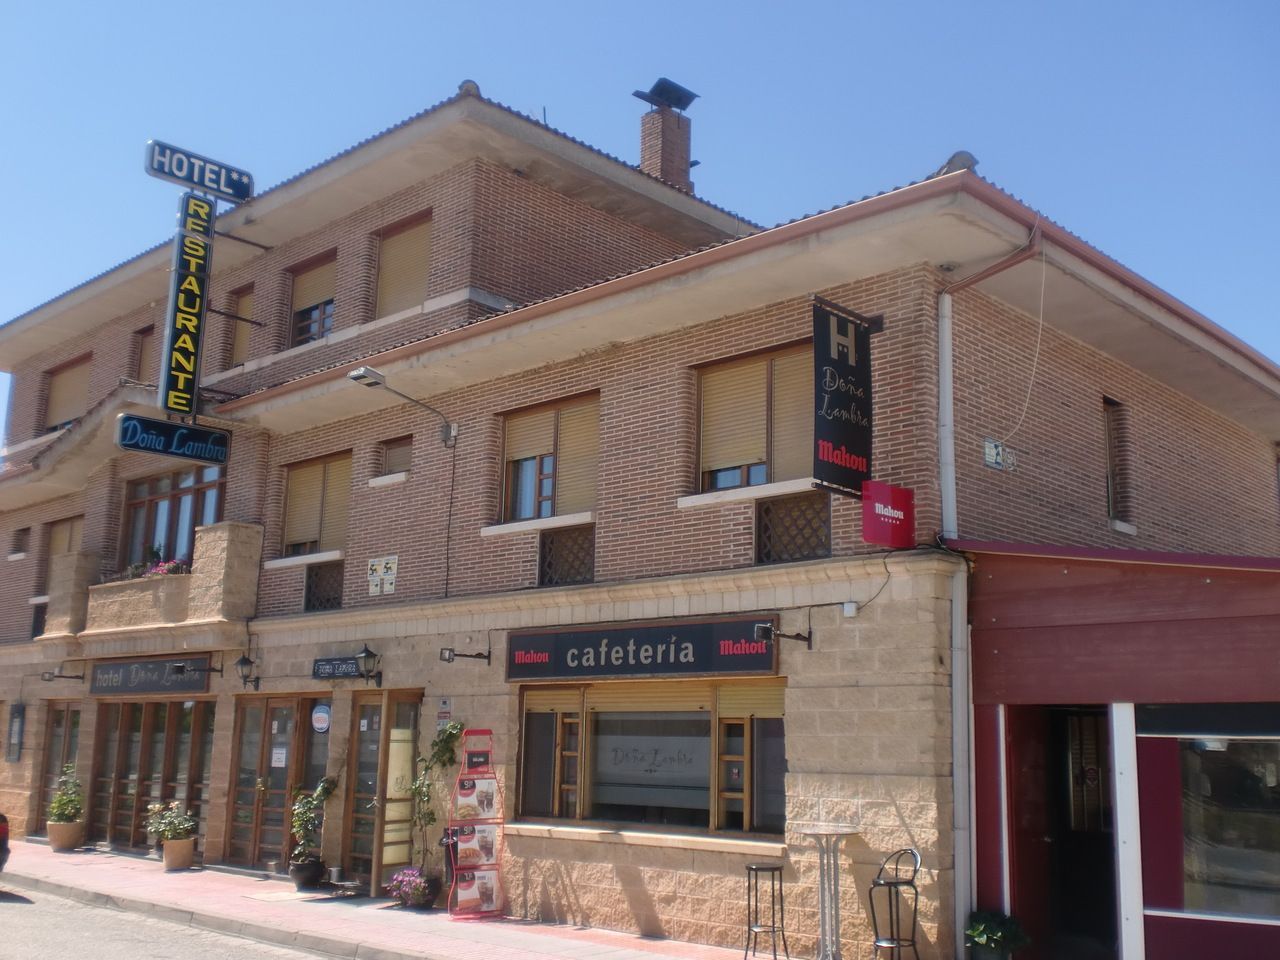 Hotel Doña Lambra